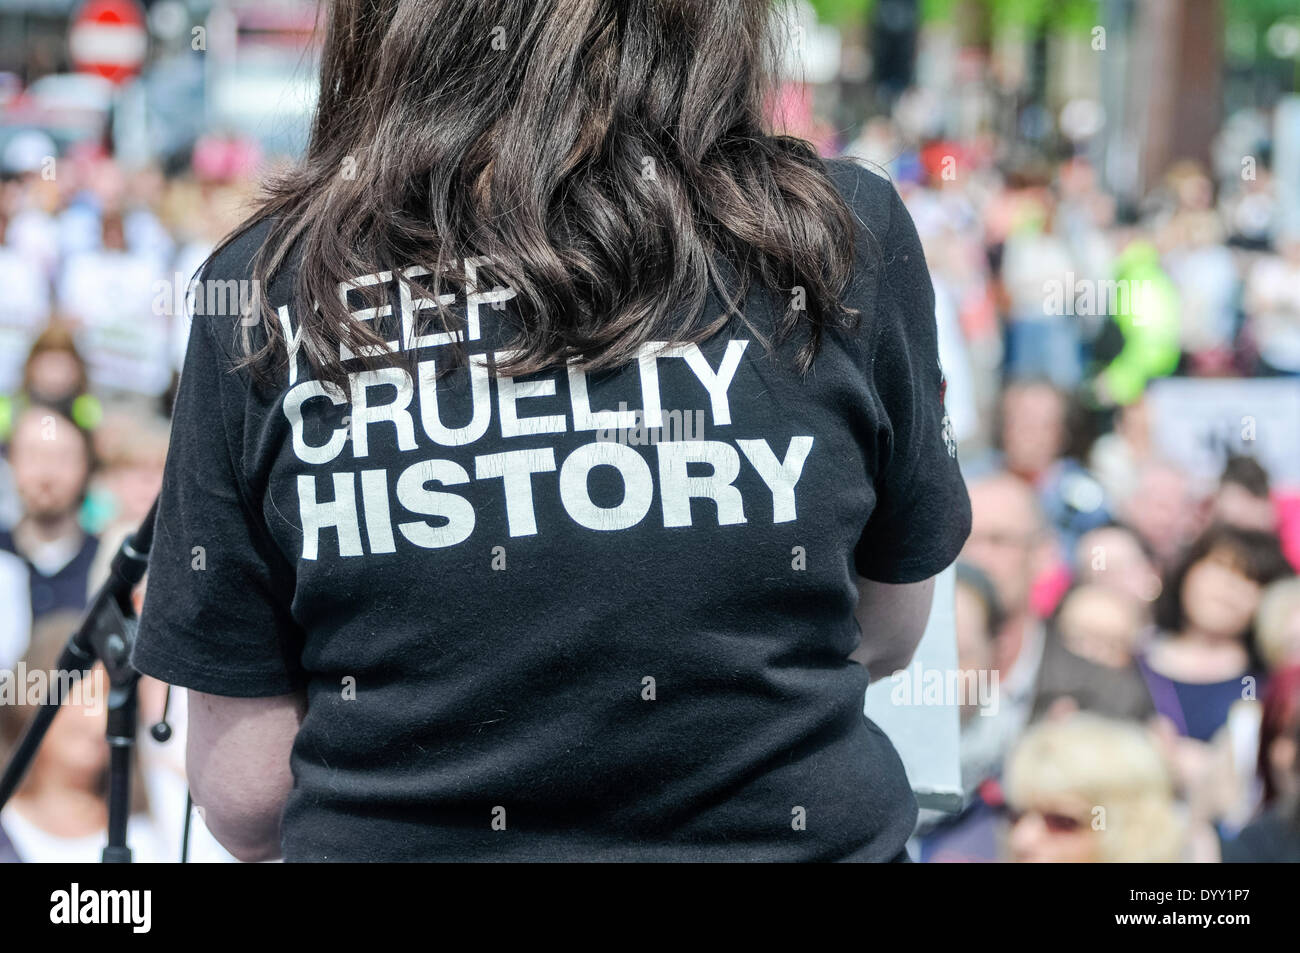 Belfast, Irlanda del Nord. 27 apr 2014 - Una donna che indossa una maglietta che dice "Tenere la crudeltà della storia" affronta una grande folla ad un anti-crudeltà nei confronti degli animali di rally. Credito: Stephen Barnes/Alamy Live News Foto Stock